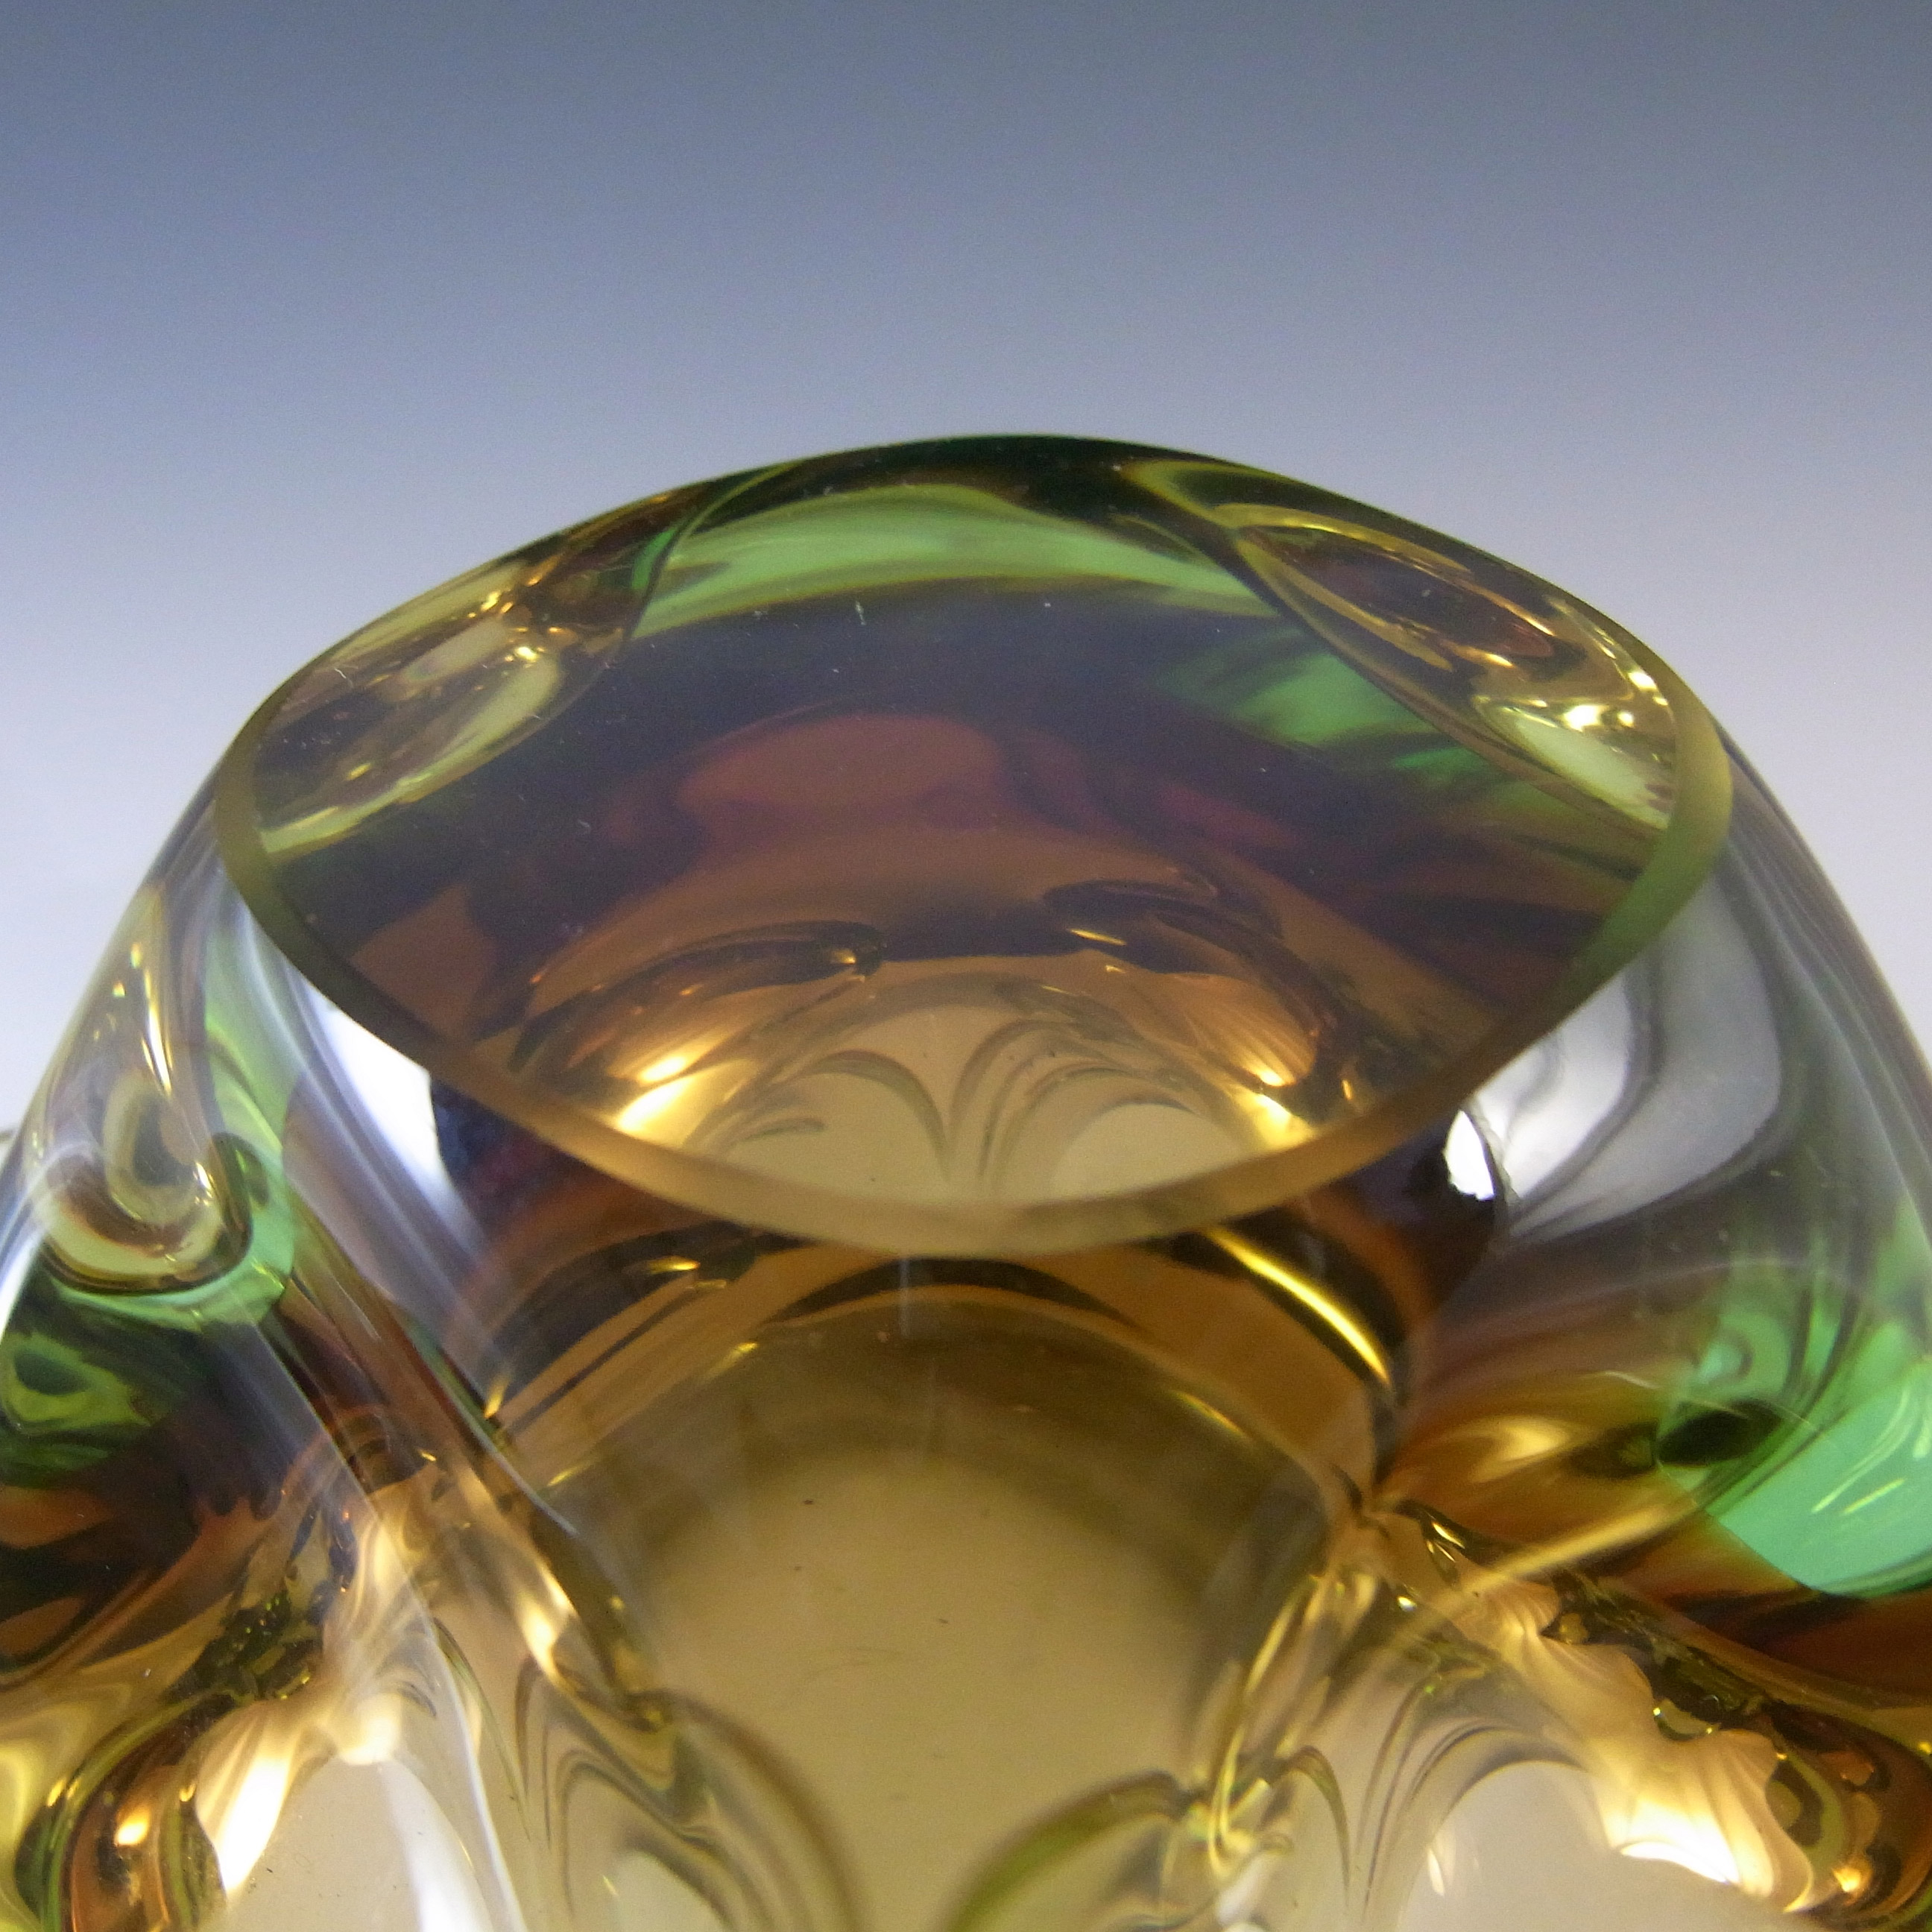 Skrdlovice #6448 Czech Amber & Green Glass Bowl by Jan Beránek - Click Image to Close